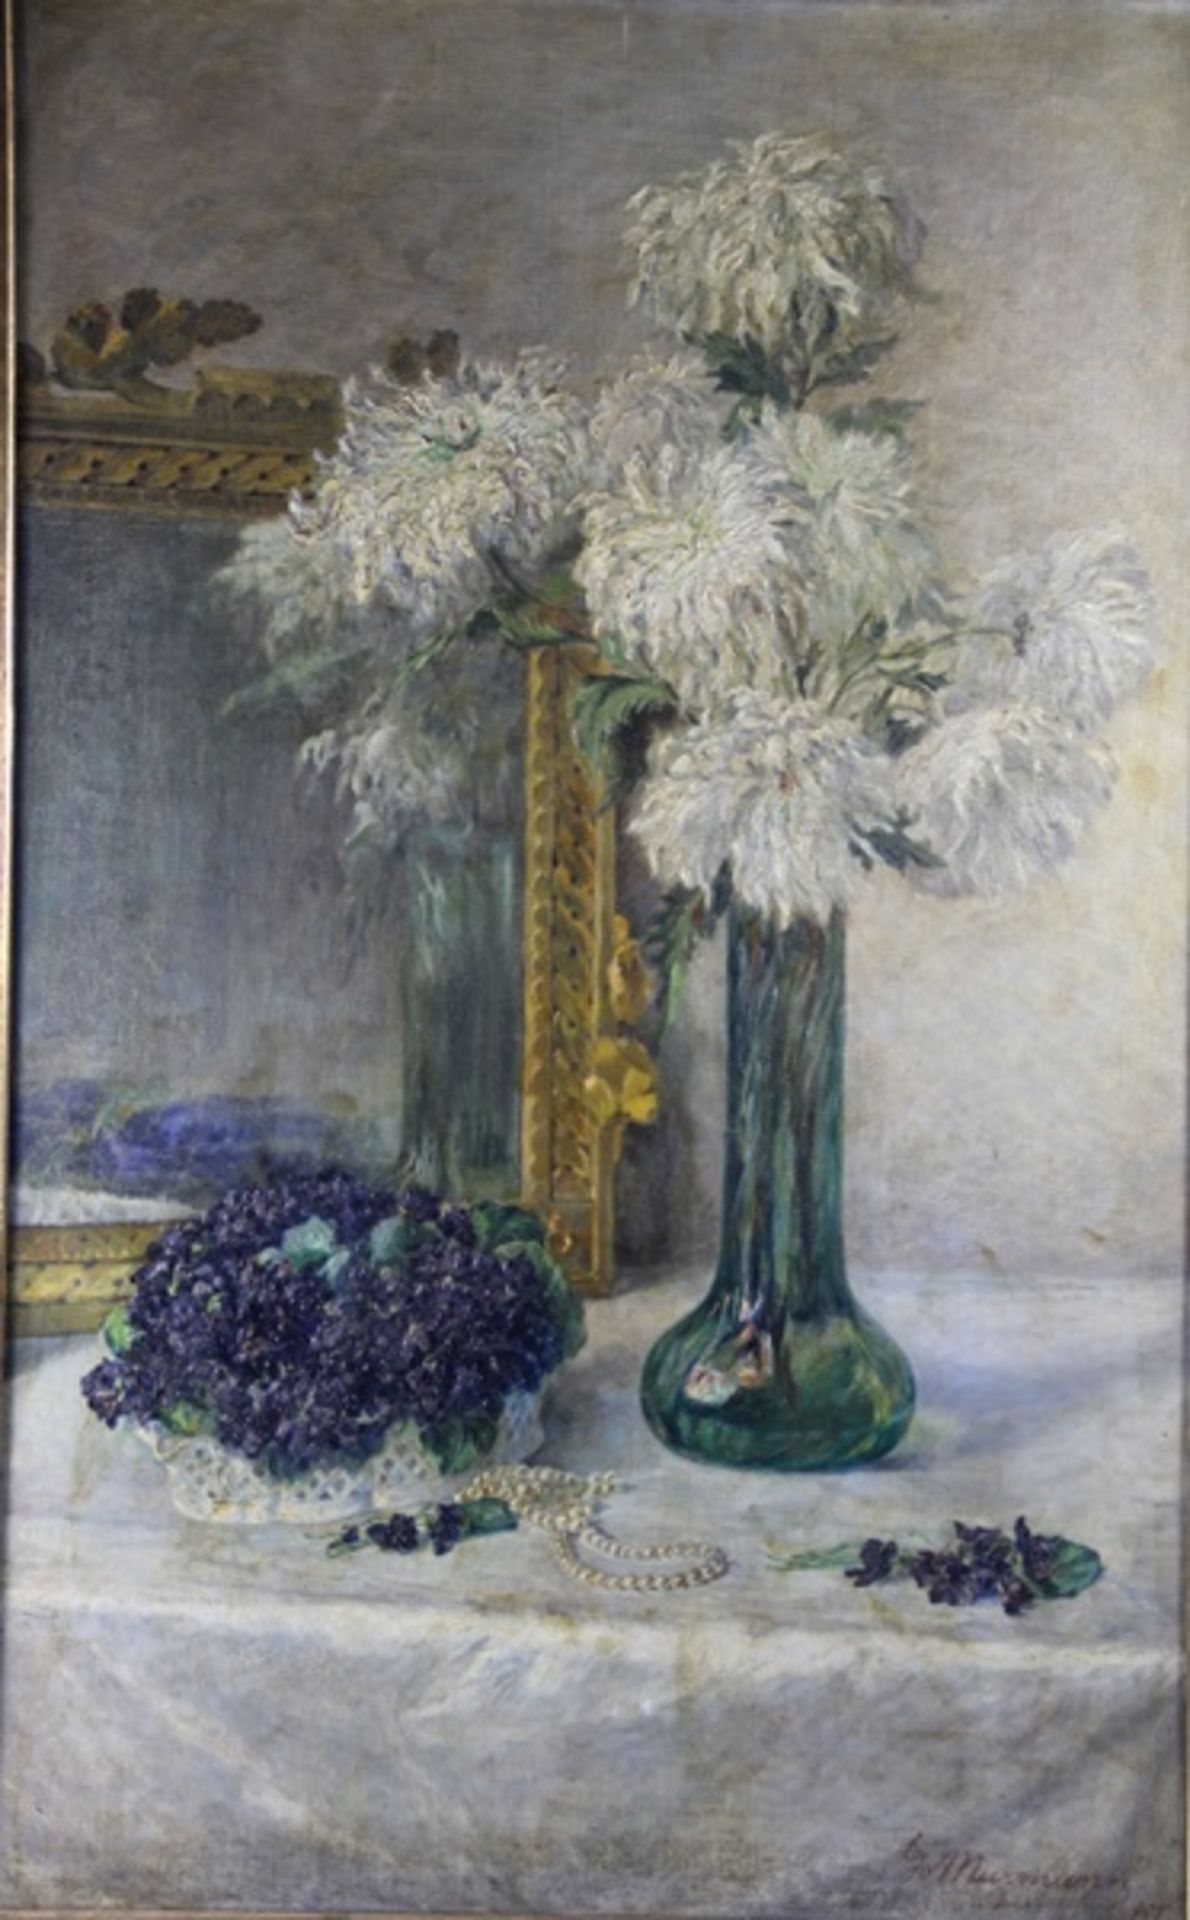 Murmann, Goos1869-1945, großformatiges Blumenstillleben in hellem Interieur, weiße Chrysanthemen